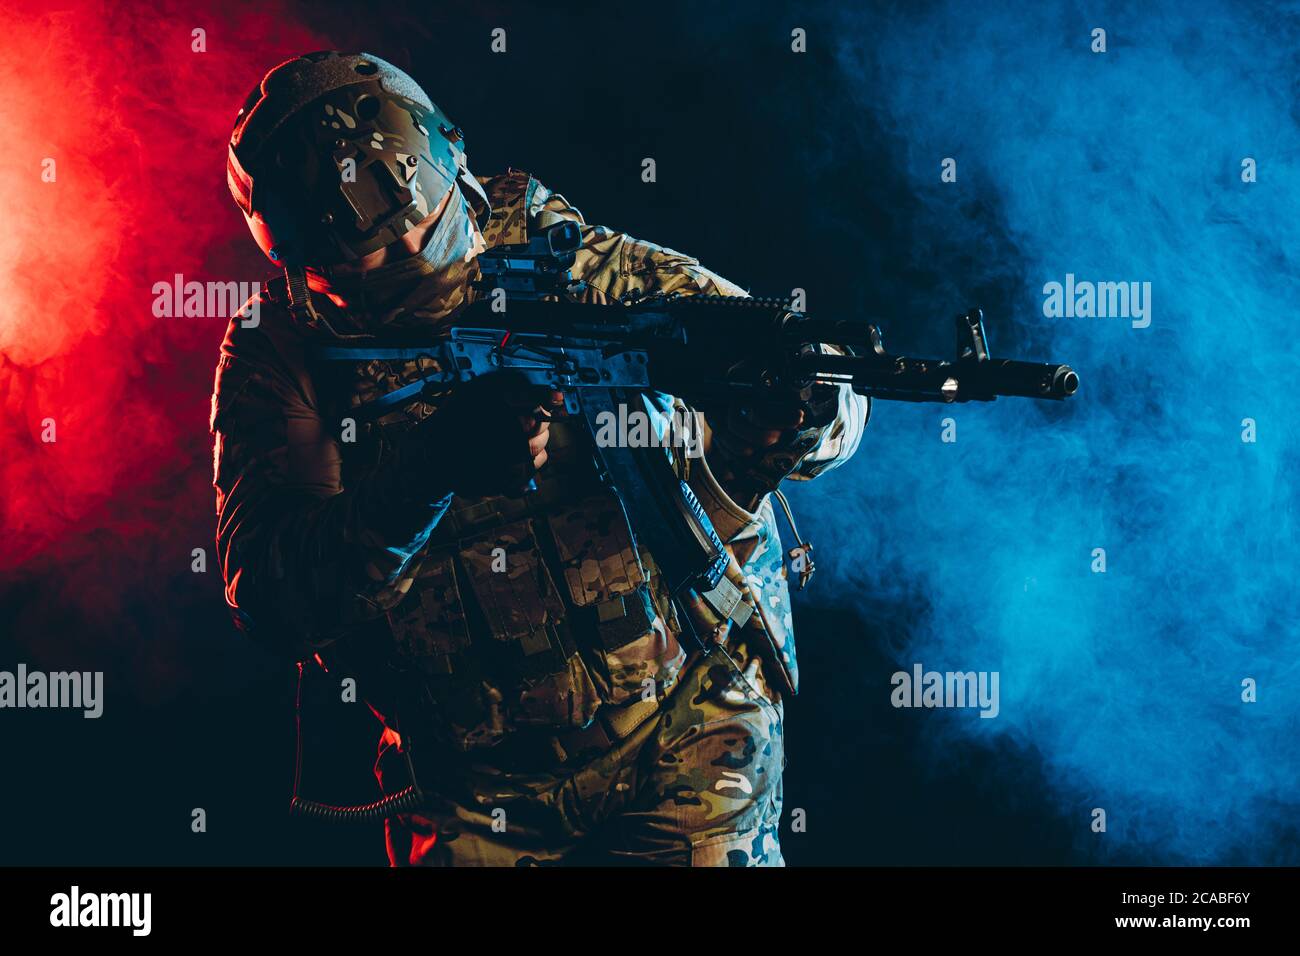 Soldat militant en action, portant un uniforme vert avec un équipement spécial, en tirant, pointant du côté du pistolet isolé sur fond UV fumé Banque D'Images